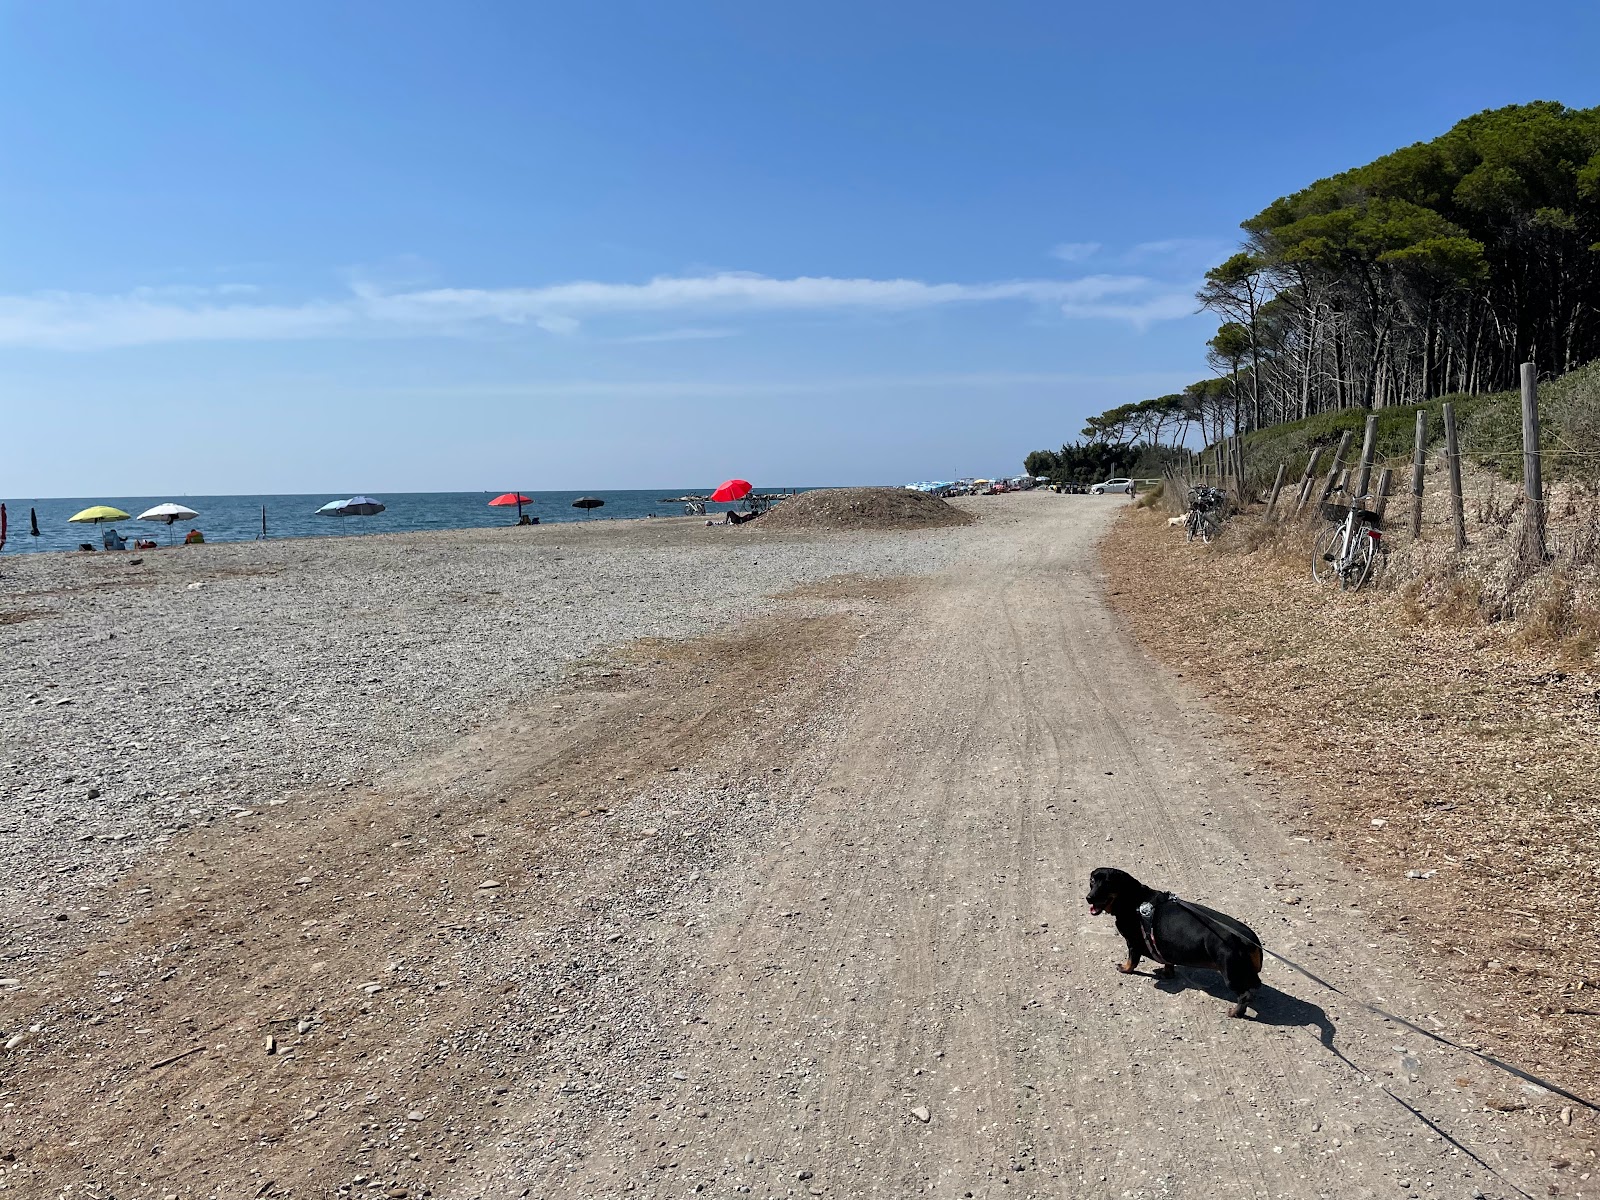 Foto de Bau Beach Le Gorette - bom local amigável para animais de estimação para férias